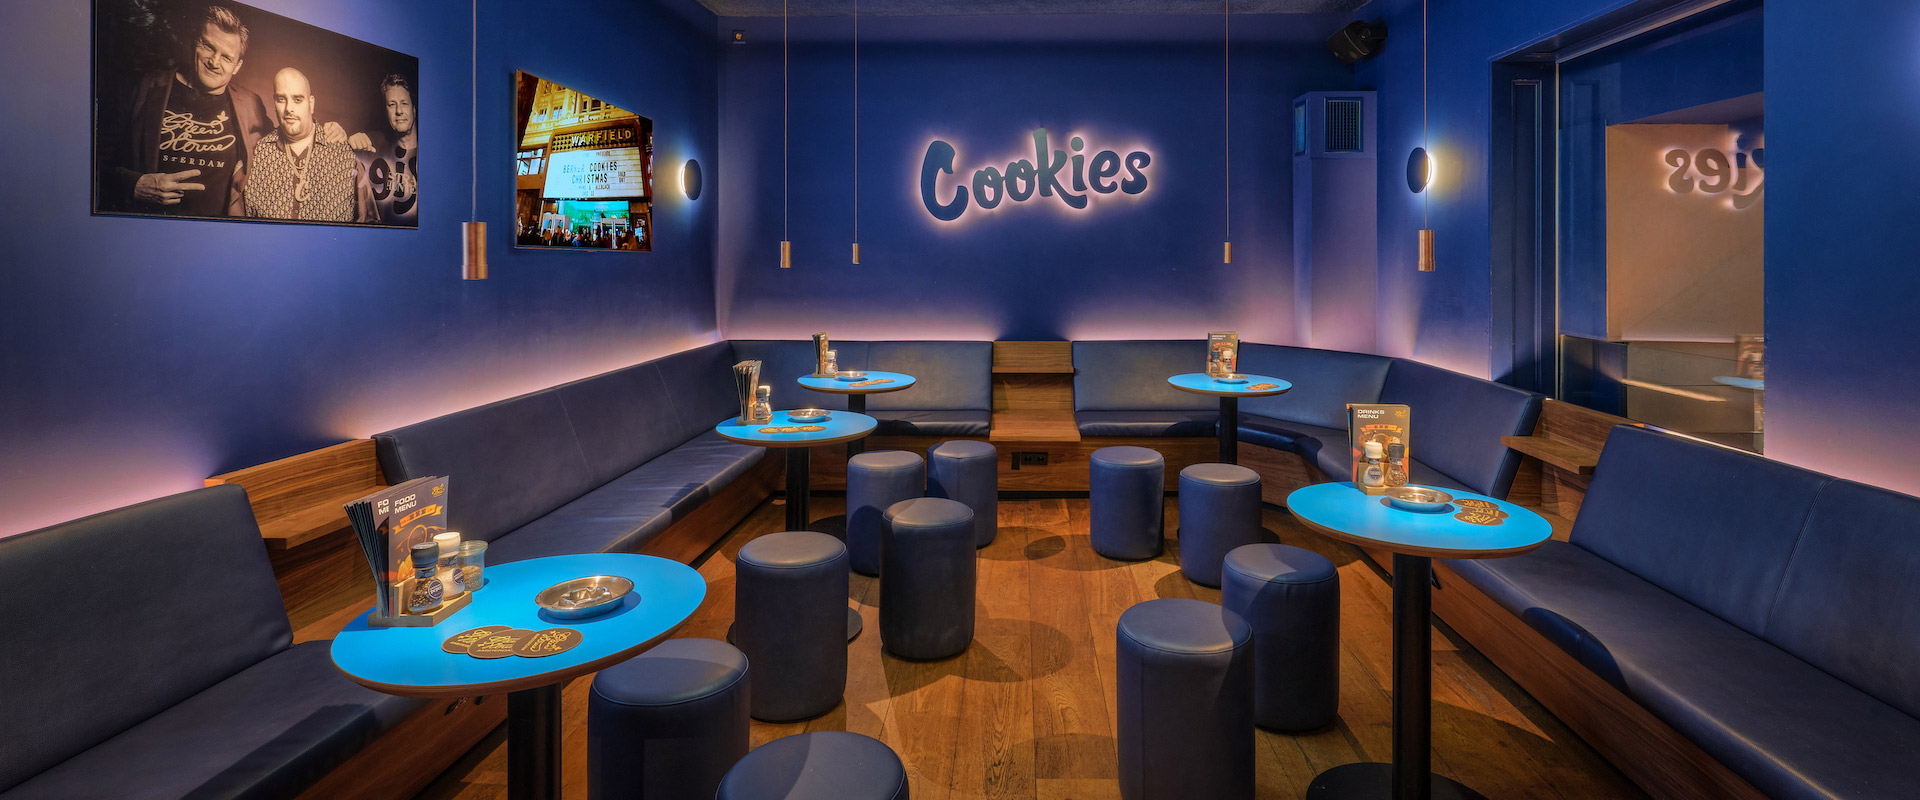 Cookies Lounge - Haarlemmerstraat 64 -Amsterdam